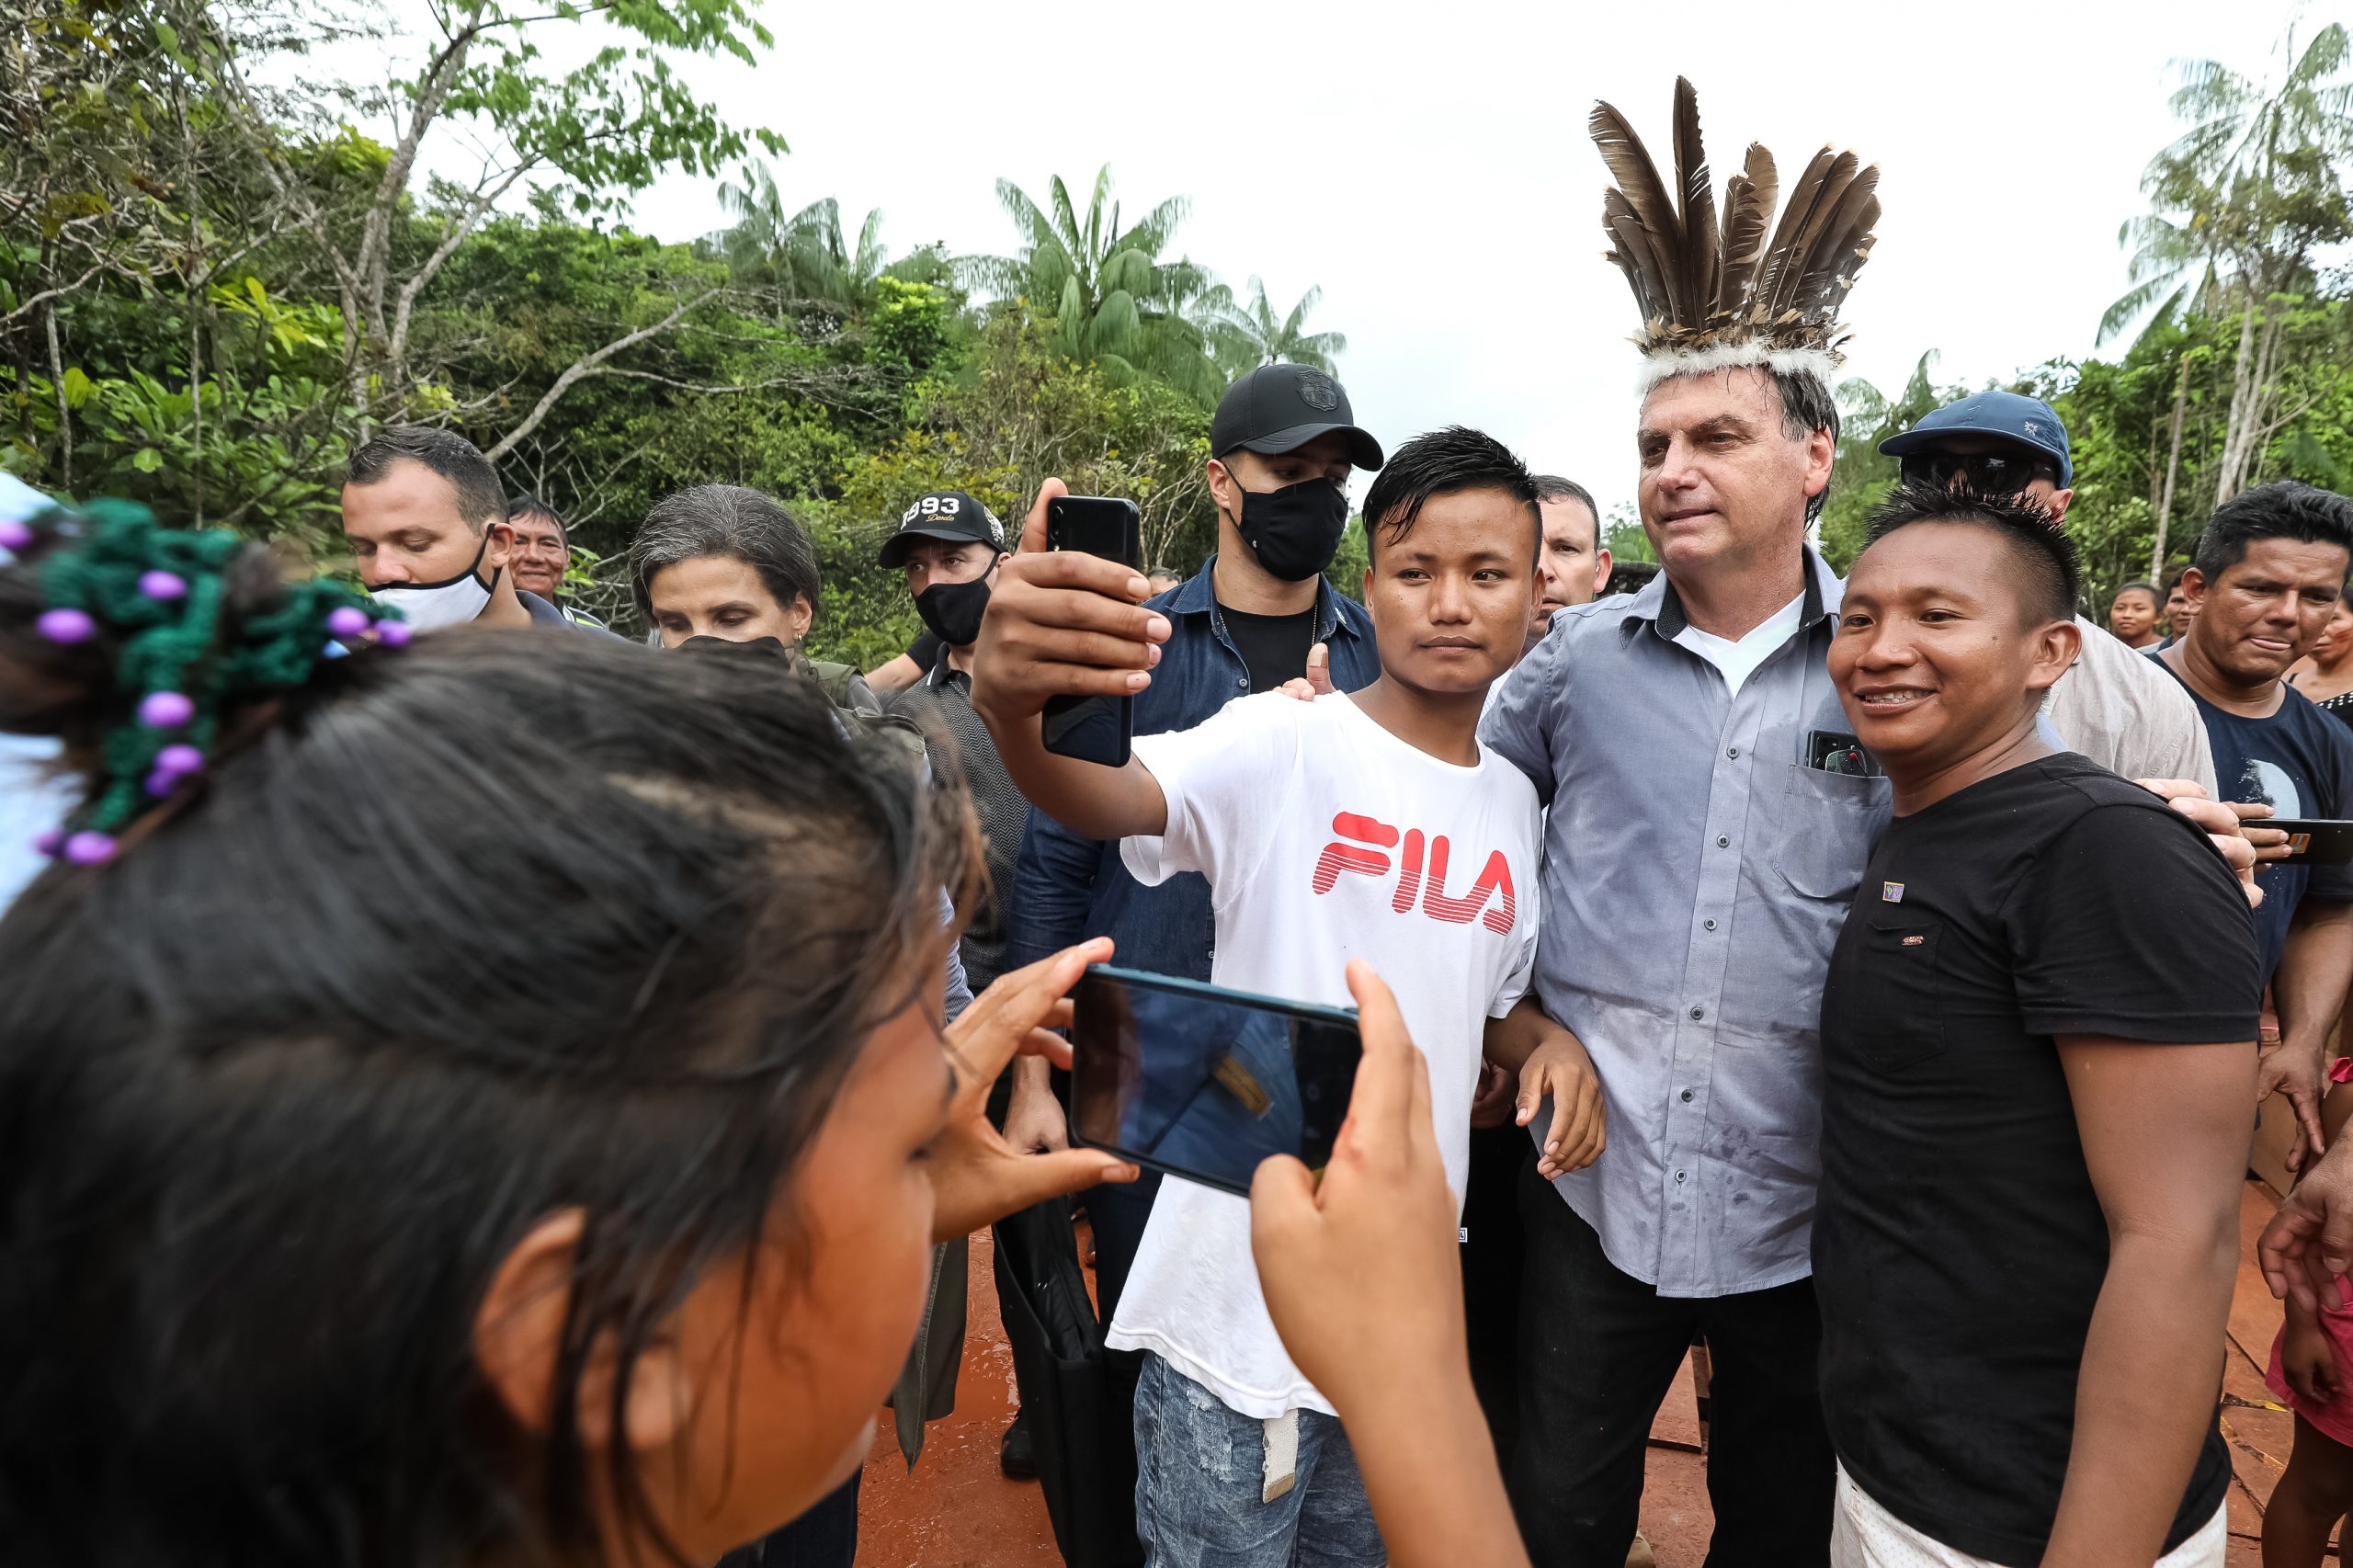 Sob clima de festa, indígenas recebem Bolsonaro com euforia e muitas fotos 13